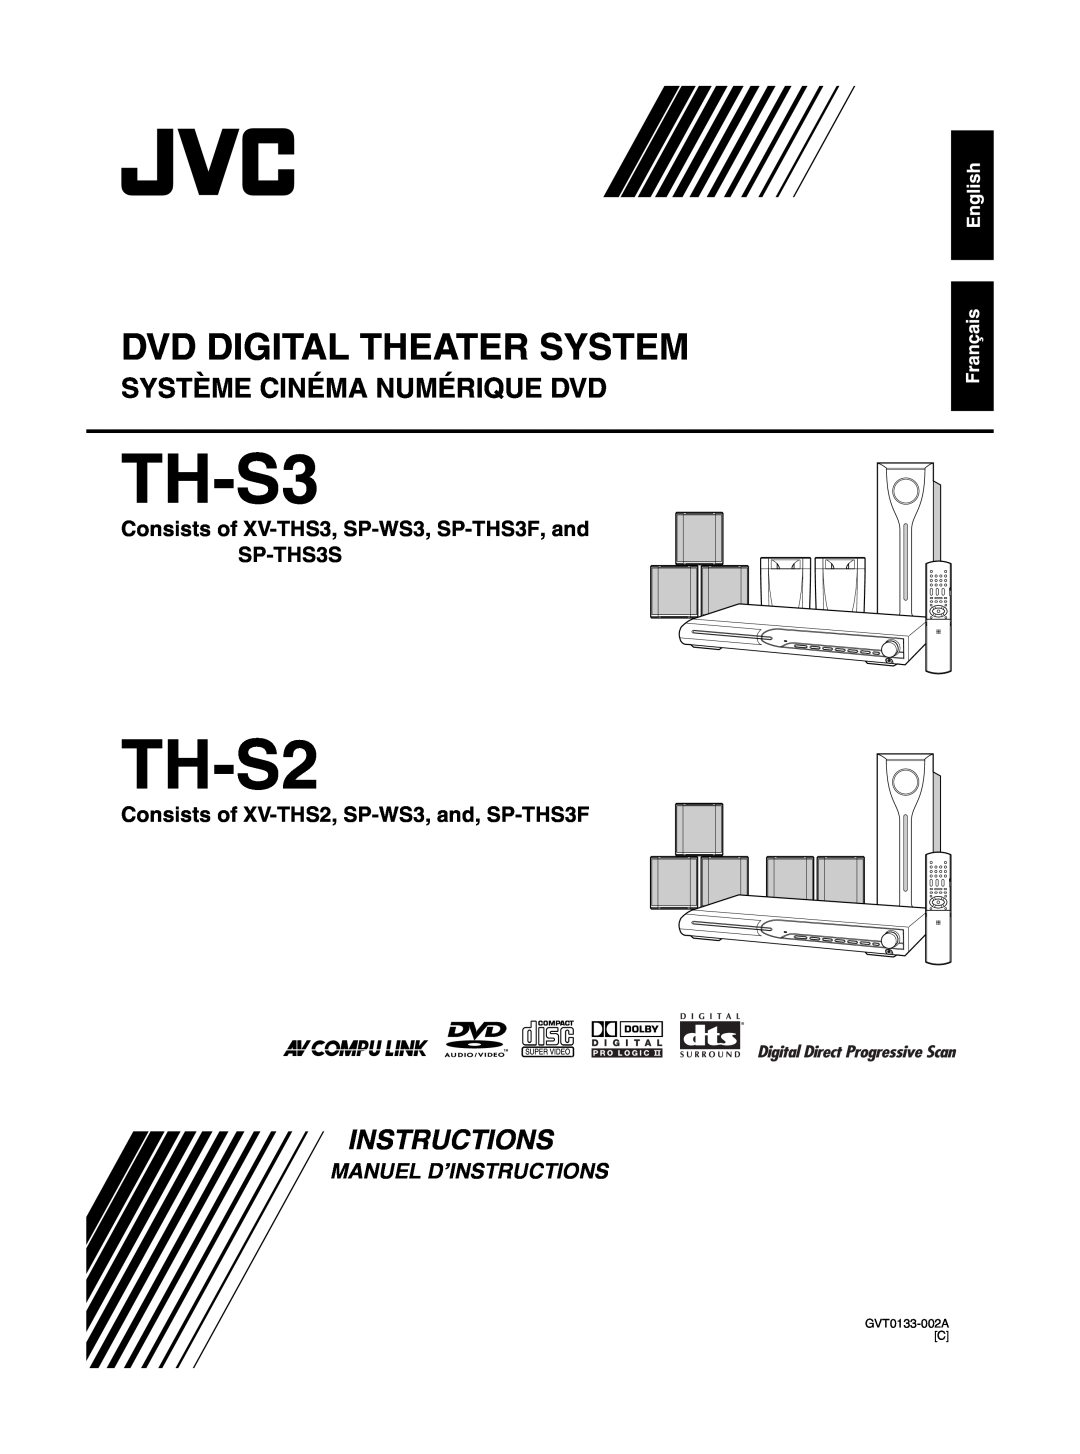 JVC TH-S3 manual Système Cinéma Numérique Dvd, TH-S2, Dvd Digital Theater System, Manuel D’Instructions, GVT0133-002AC 